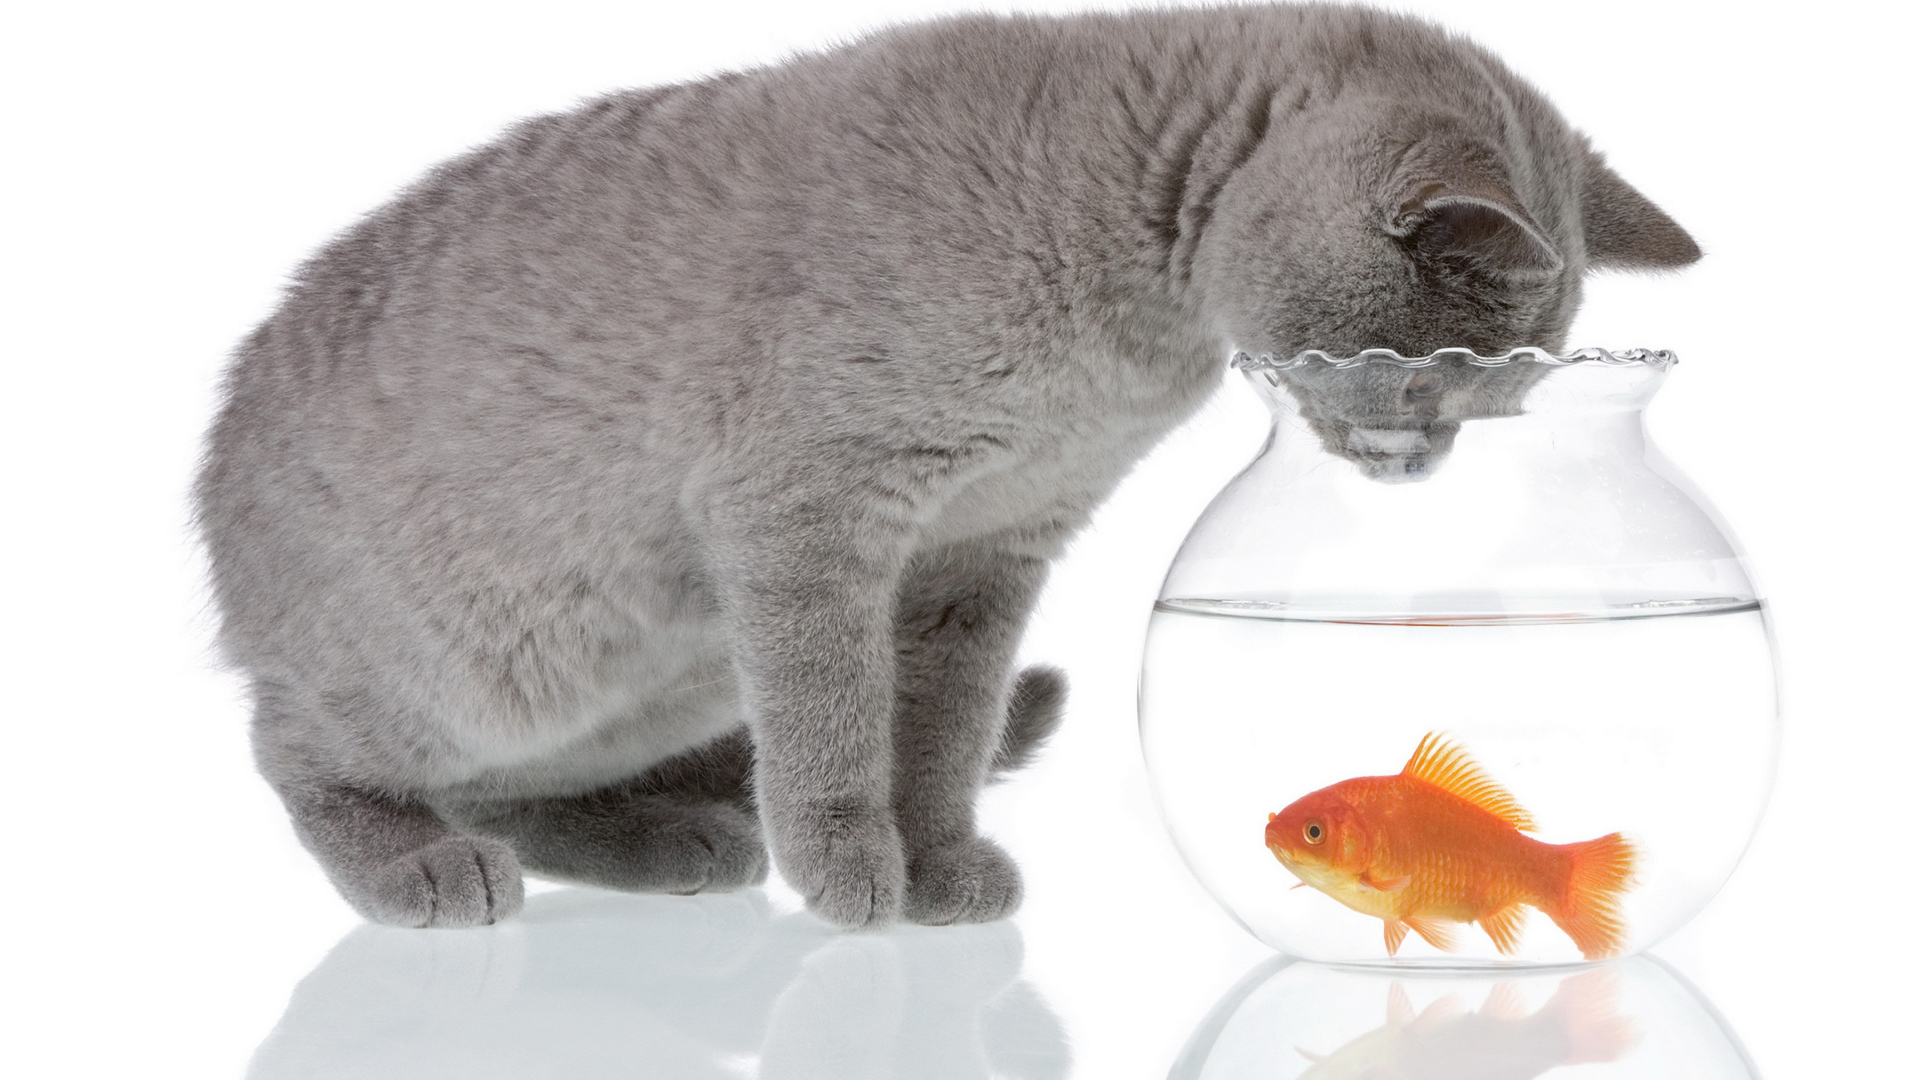 Серый кот заглядывает в аквариум с золотой рыбкой на белом фоне